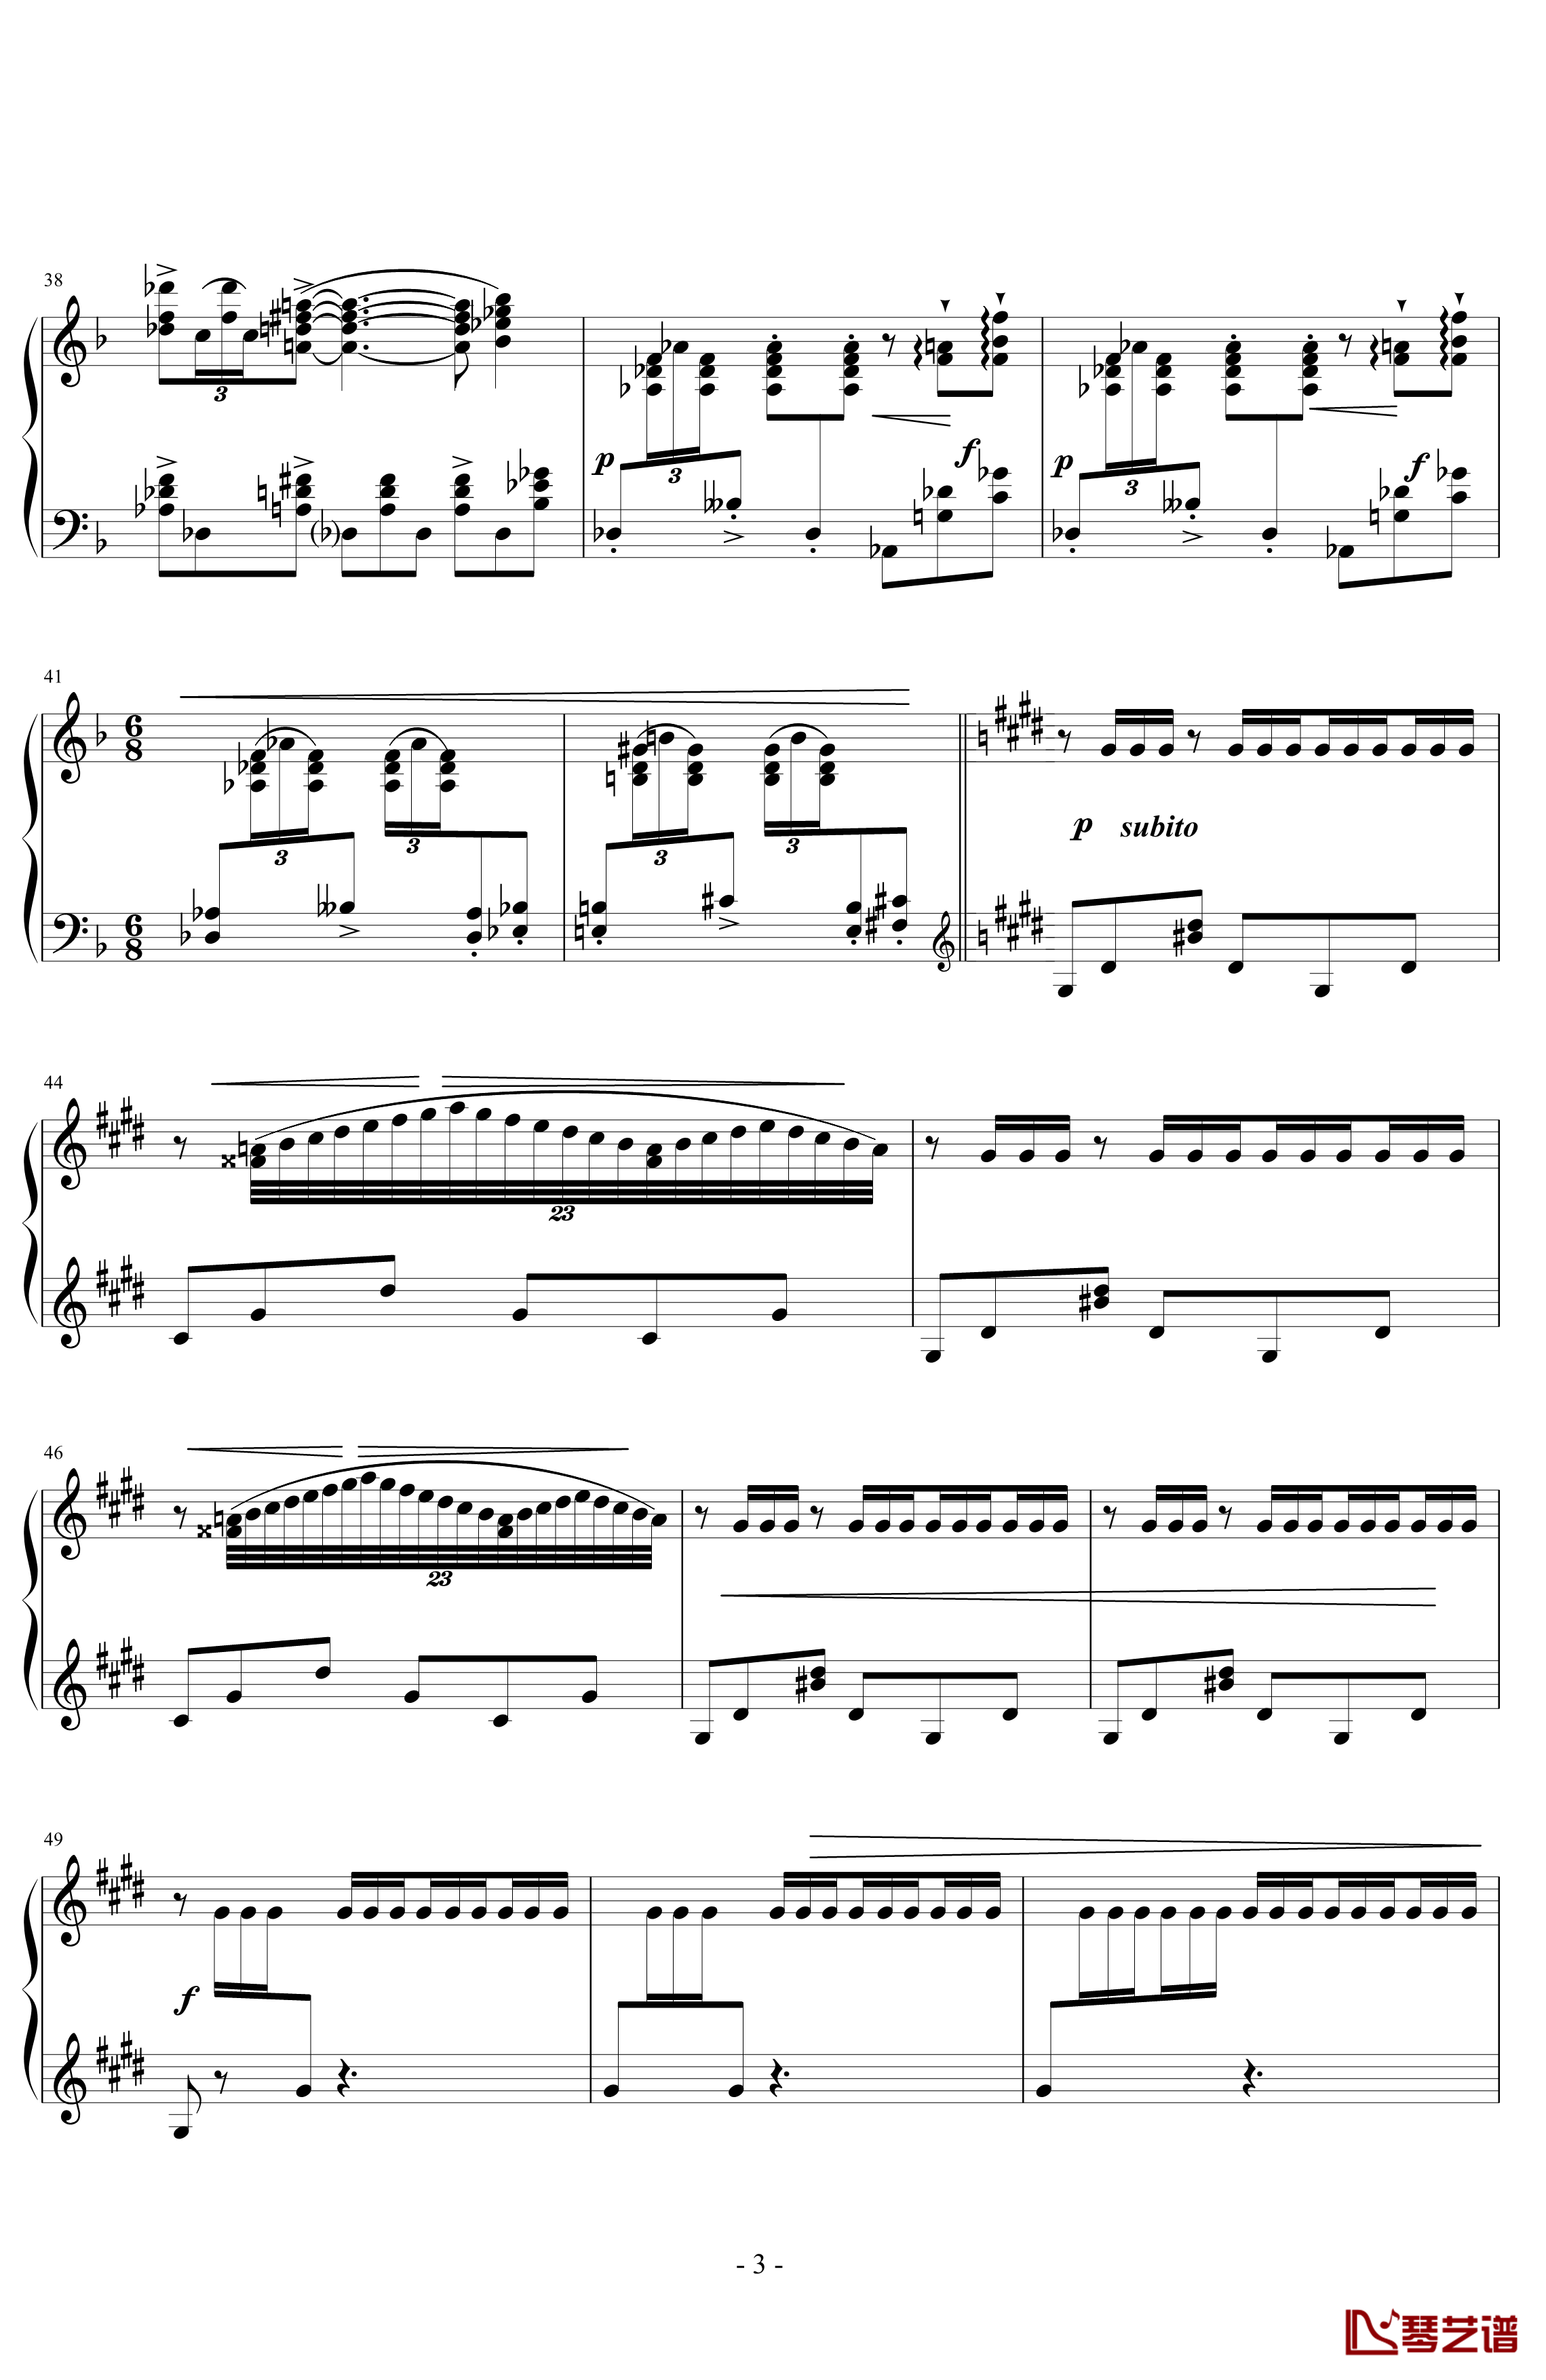 丑角的晨歌钢琴谱-组曲第4首-拉威尔-Ravel3